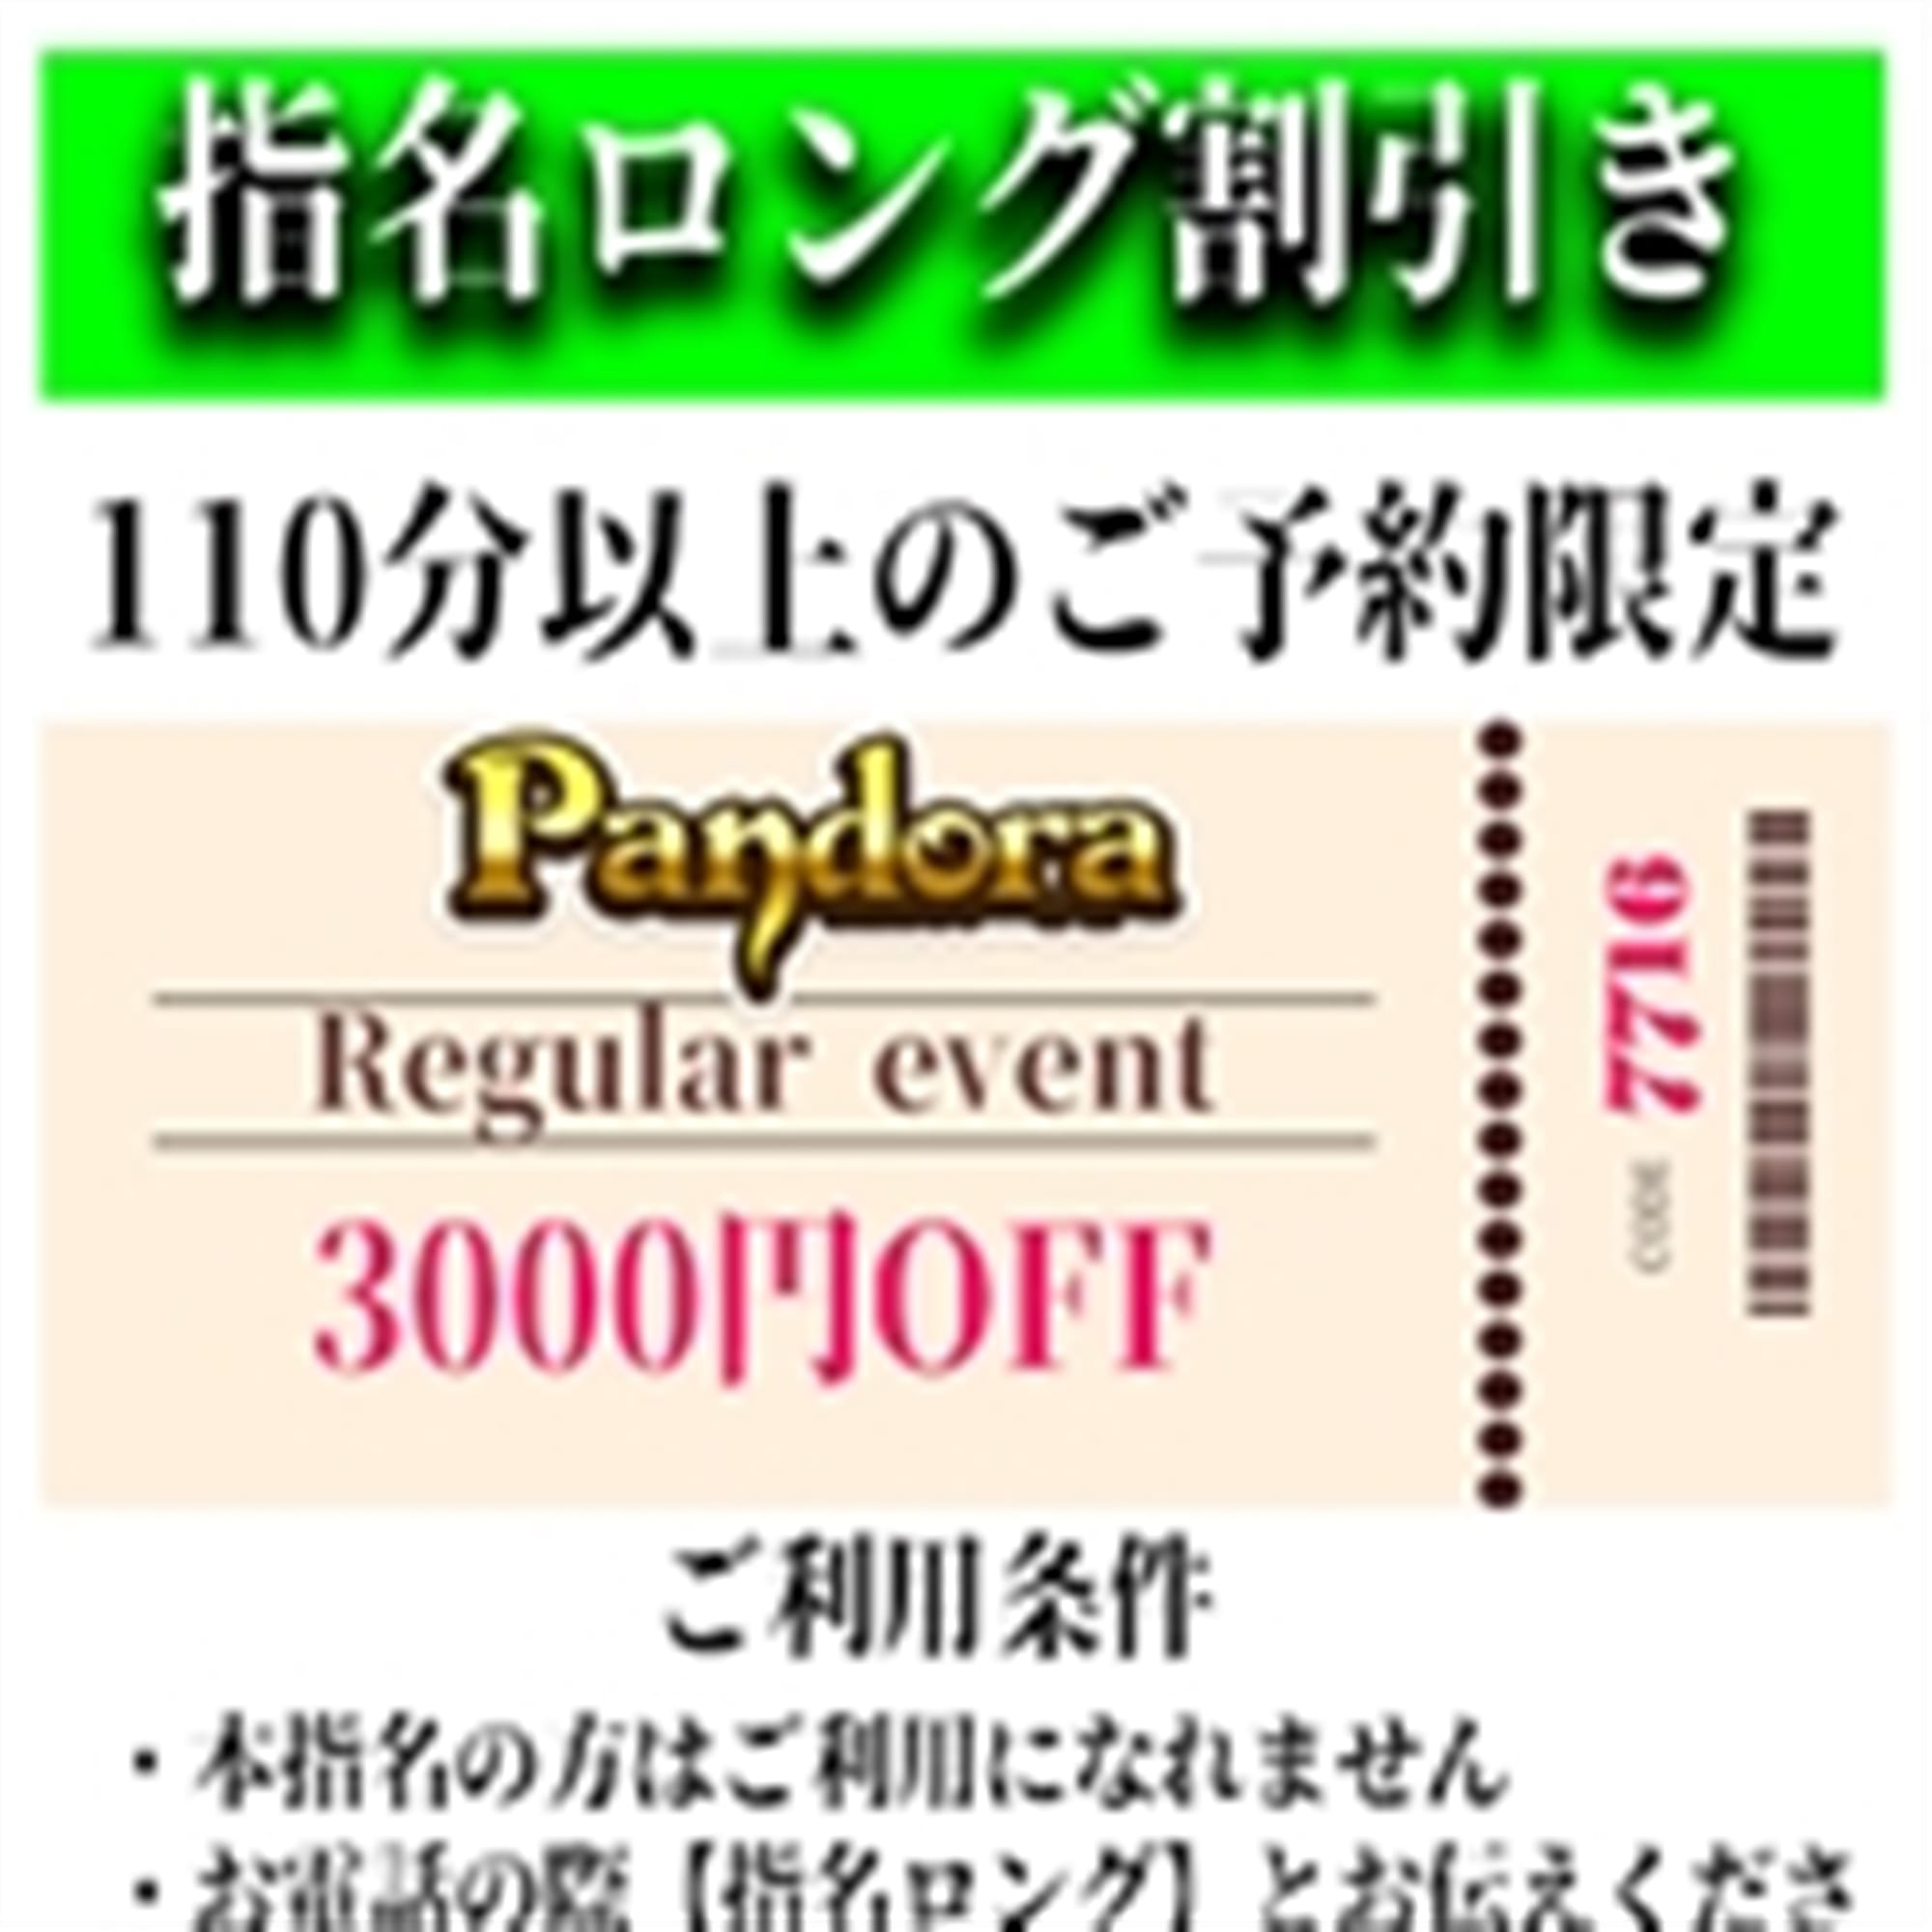 「ご指名のお客様も遊べるロングコース割引」04/20(土) 05:40 | Pandora(パンドラ)新潟のお得なニュース